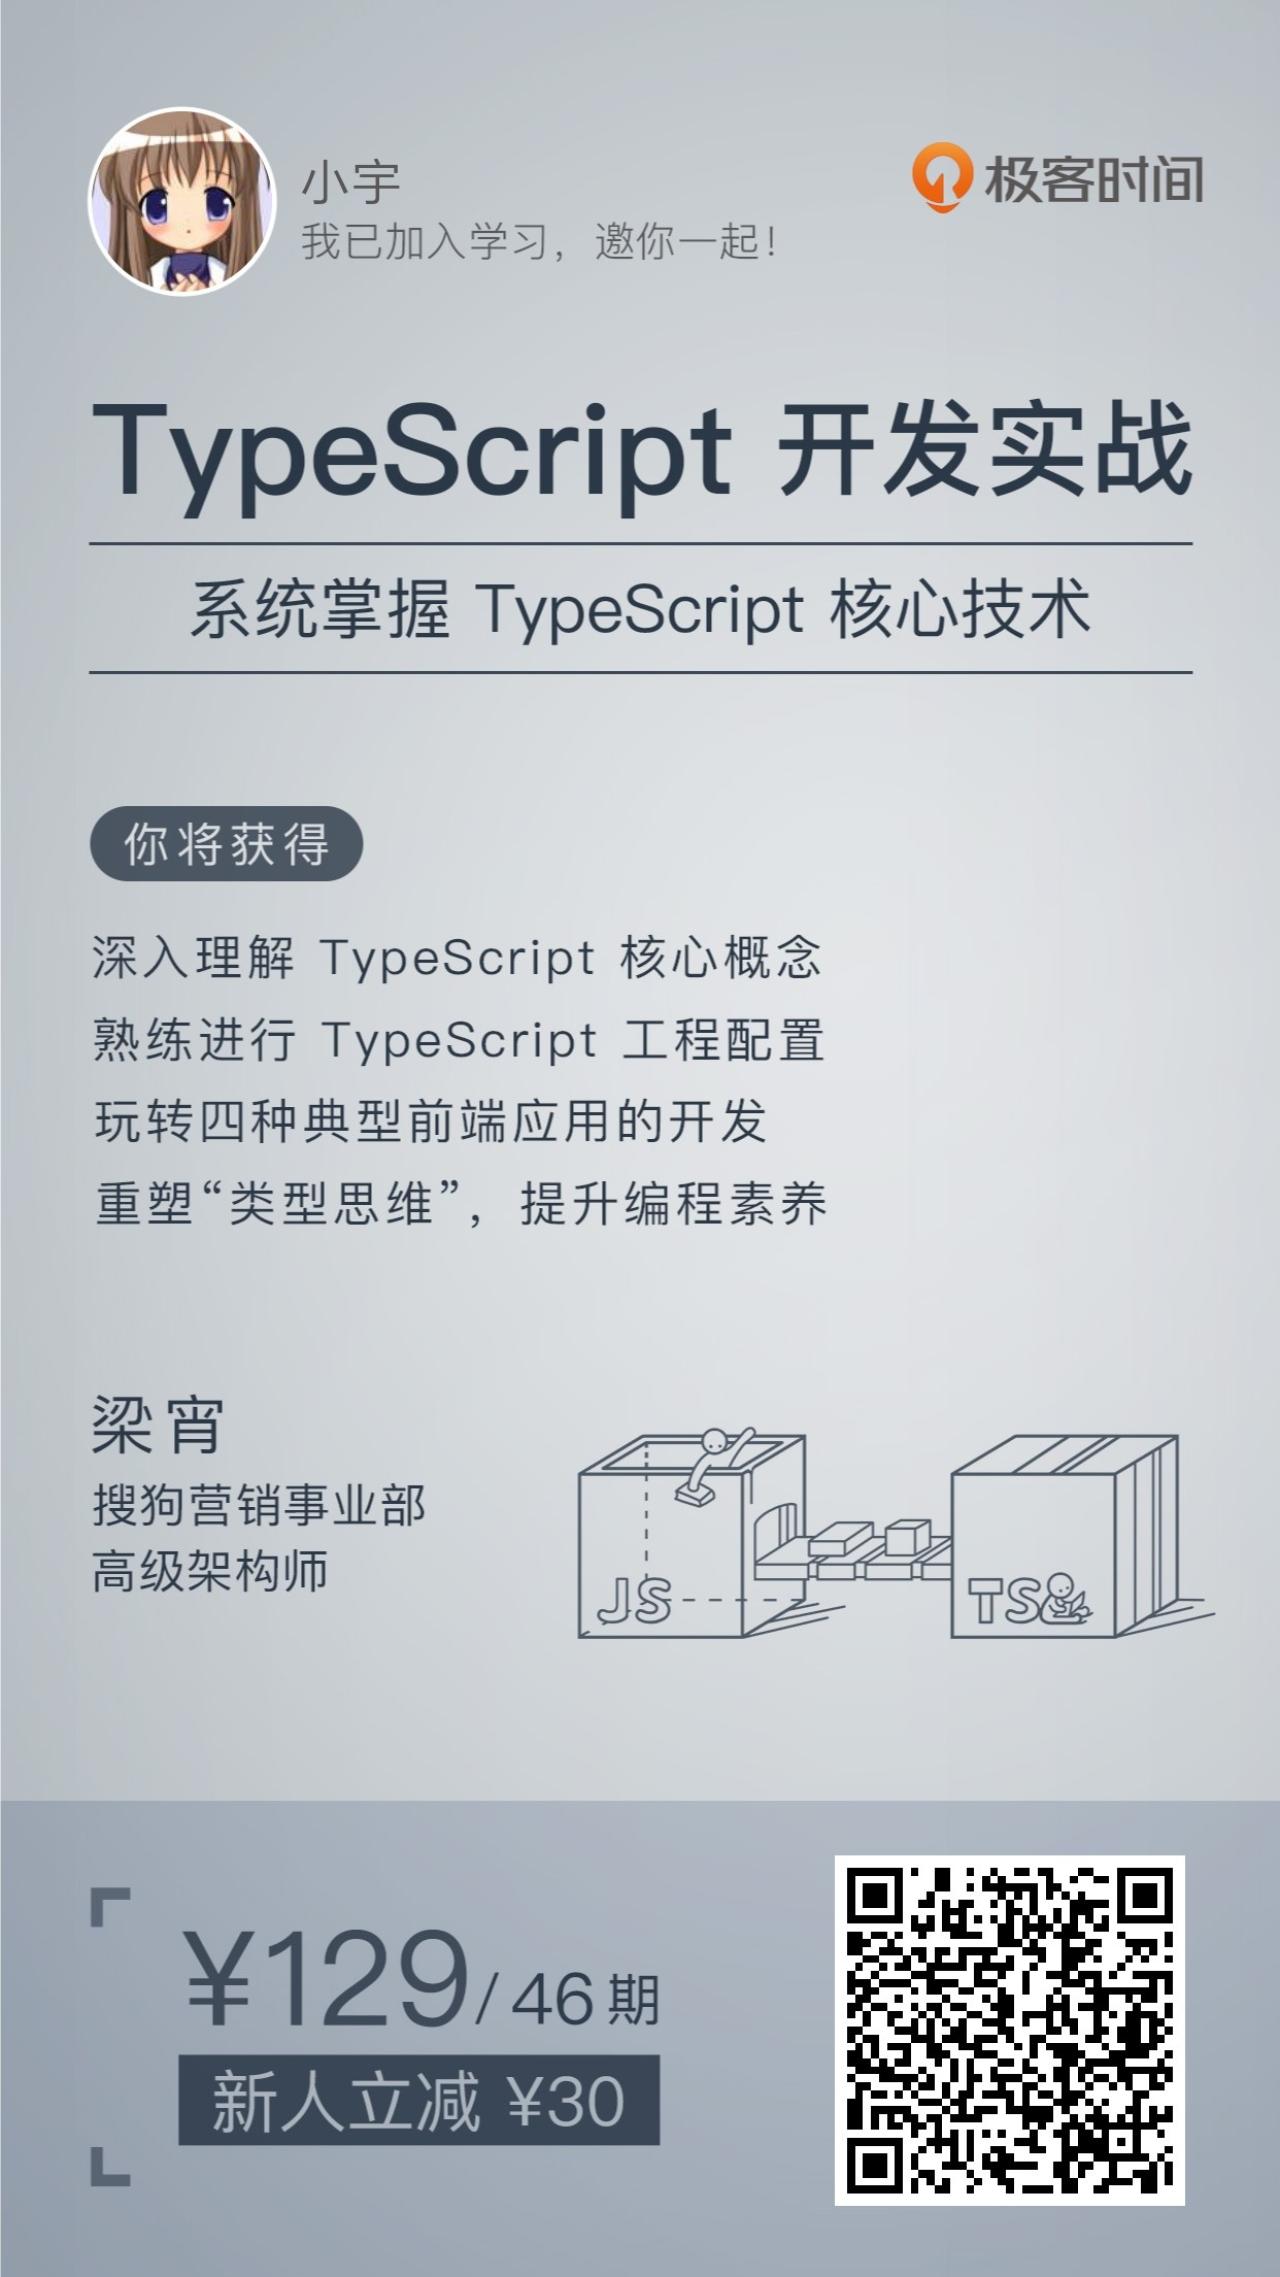 极客时间《TypeScript开发实战》（系统掌握TypeScript核心技术）课程分享海报